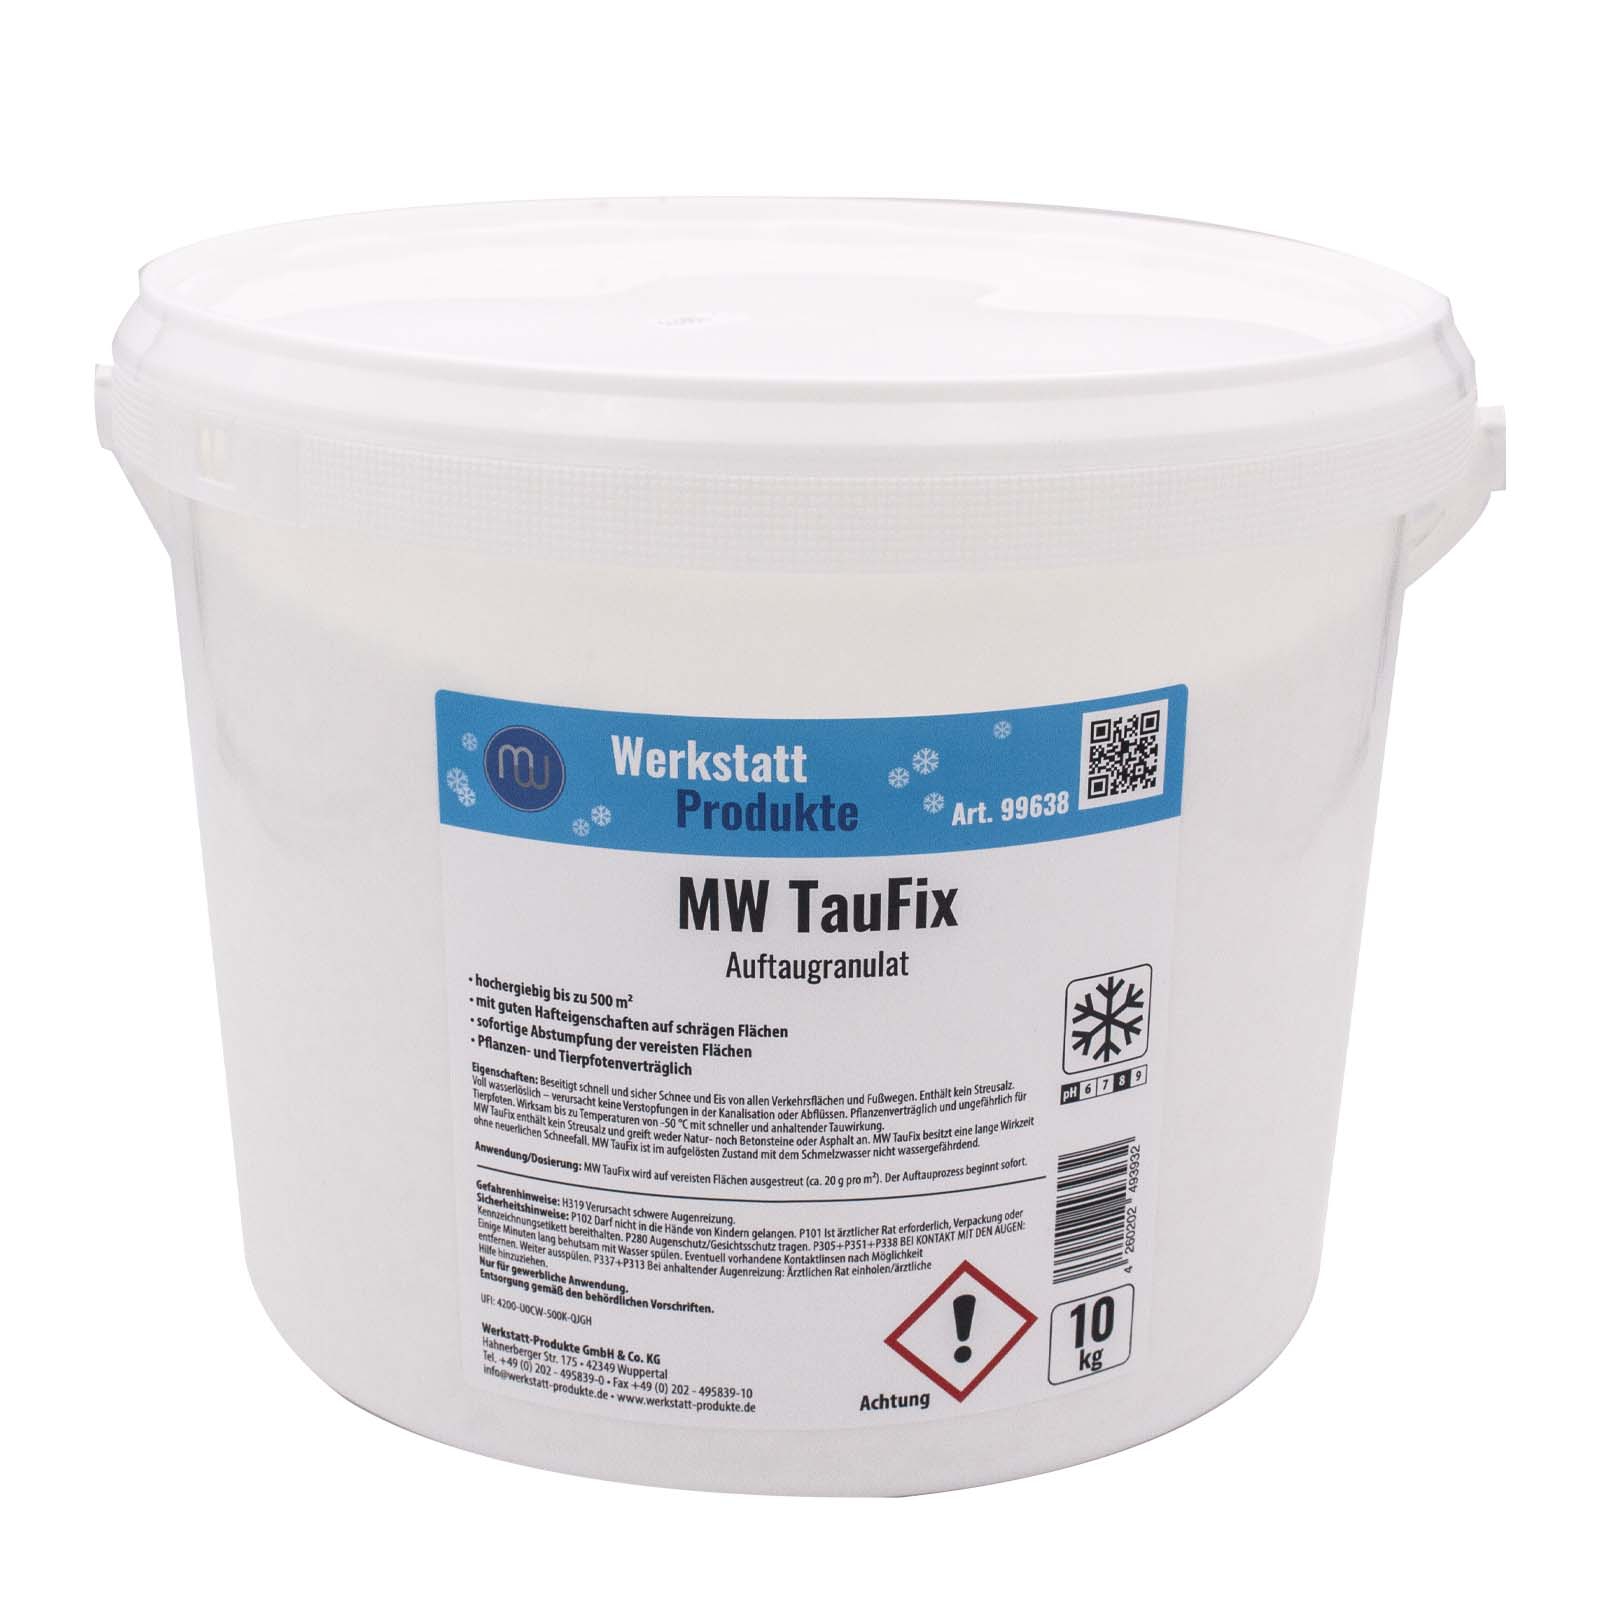 MW TauFix Auftaugranulat (kein Streusalz) bis -50°C 10 kg